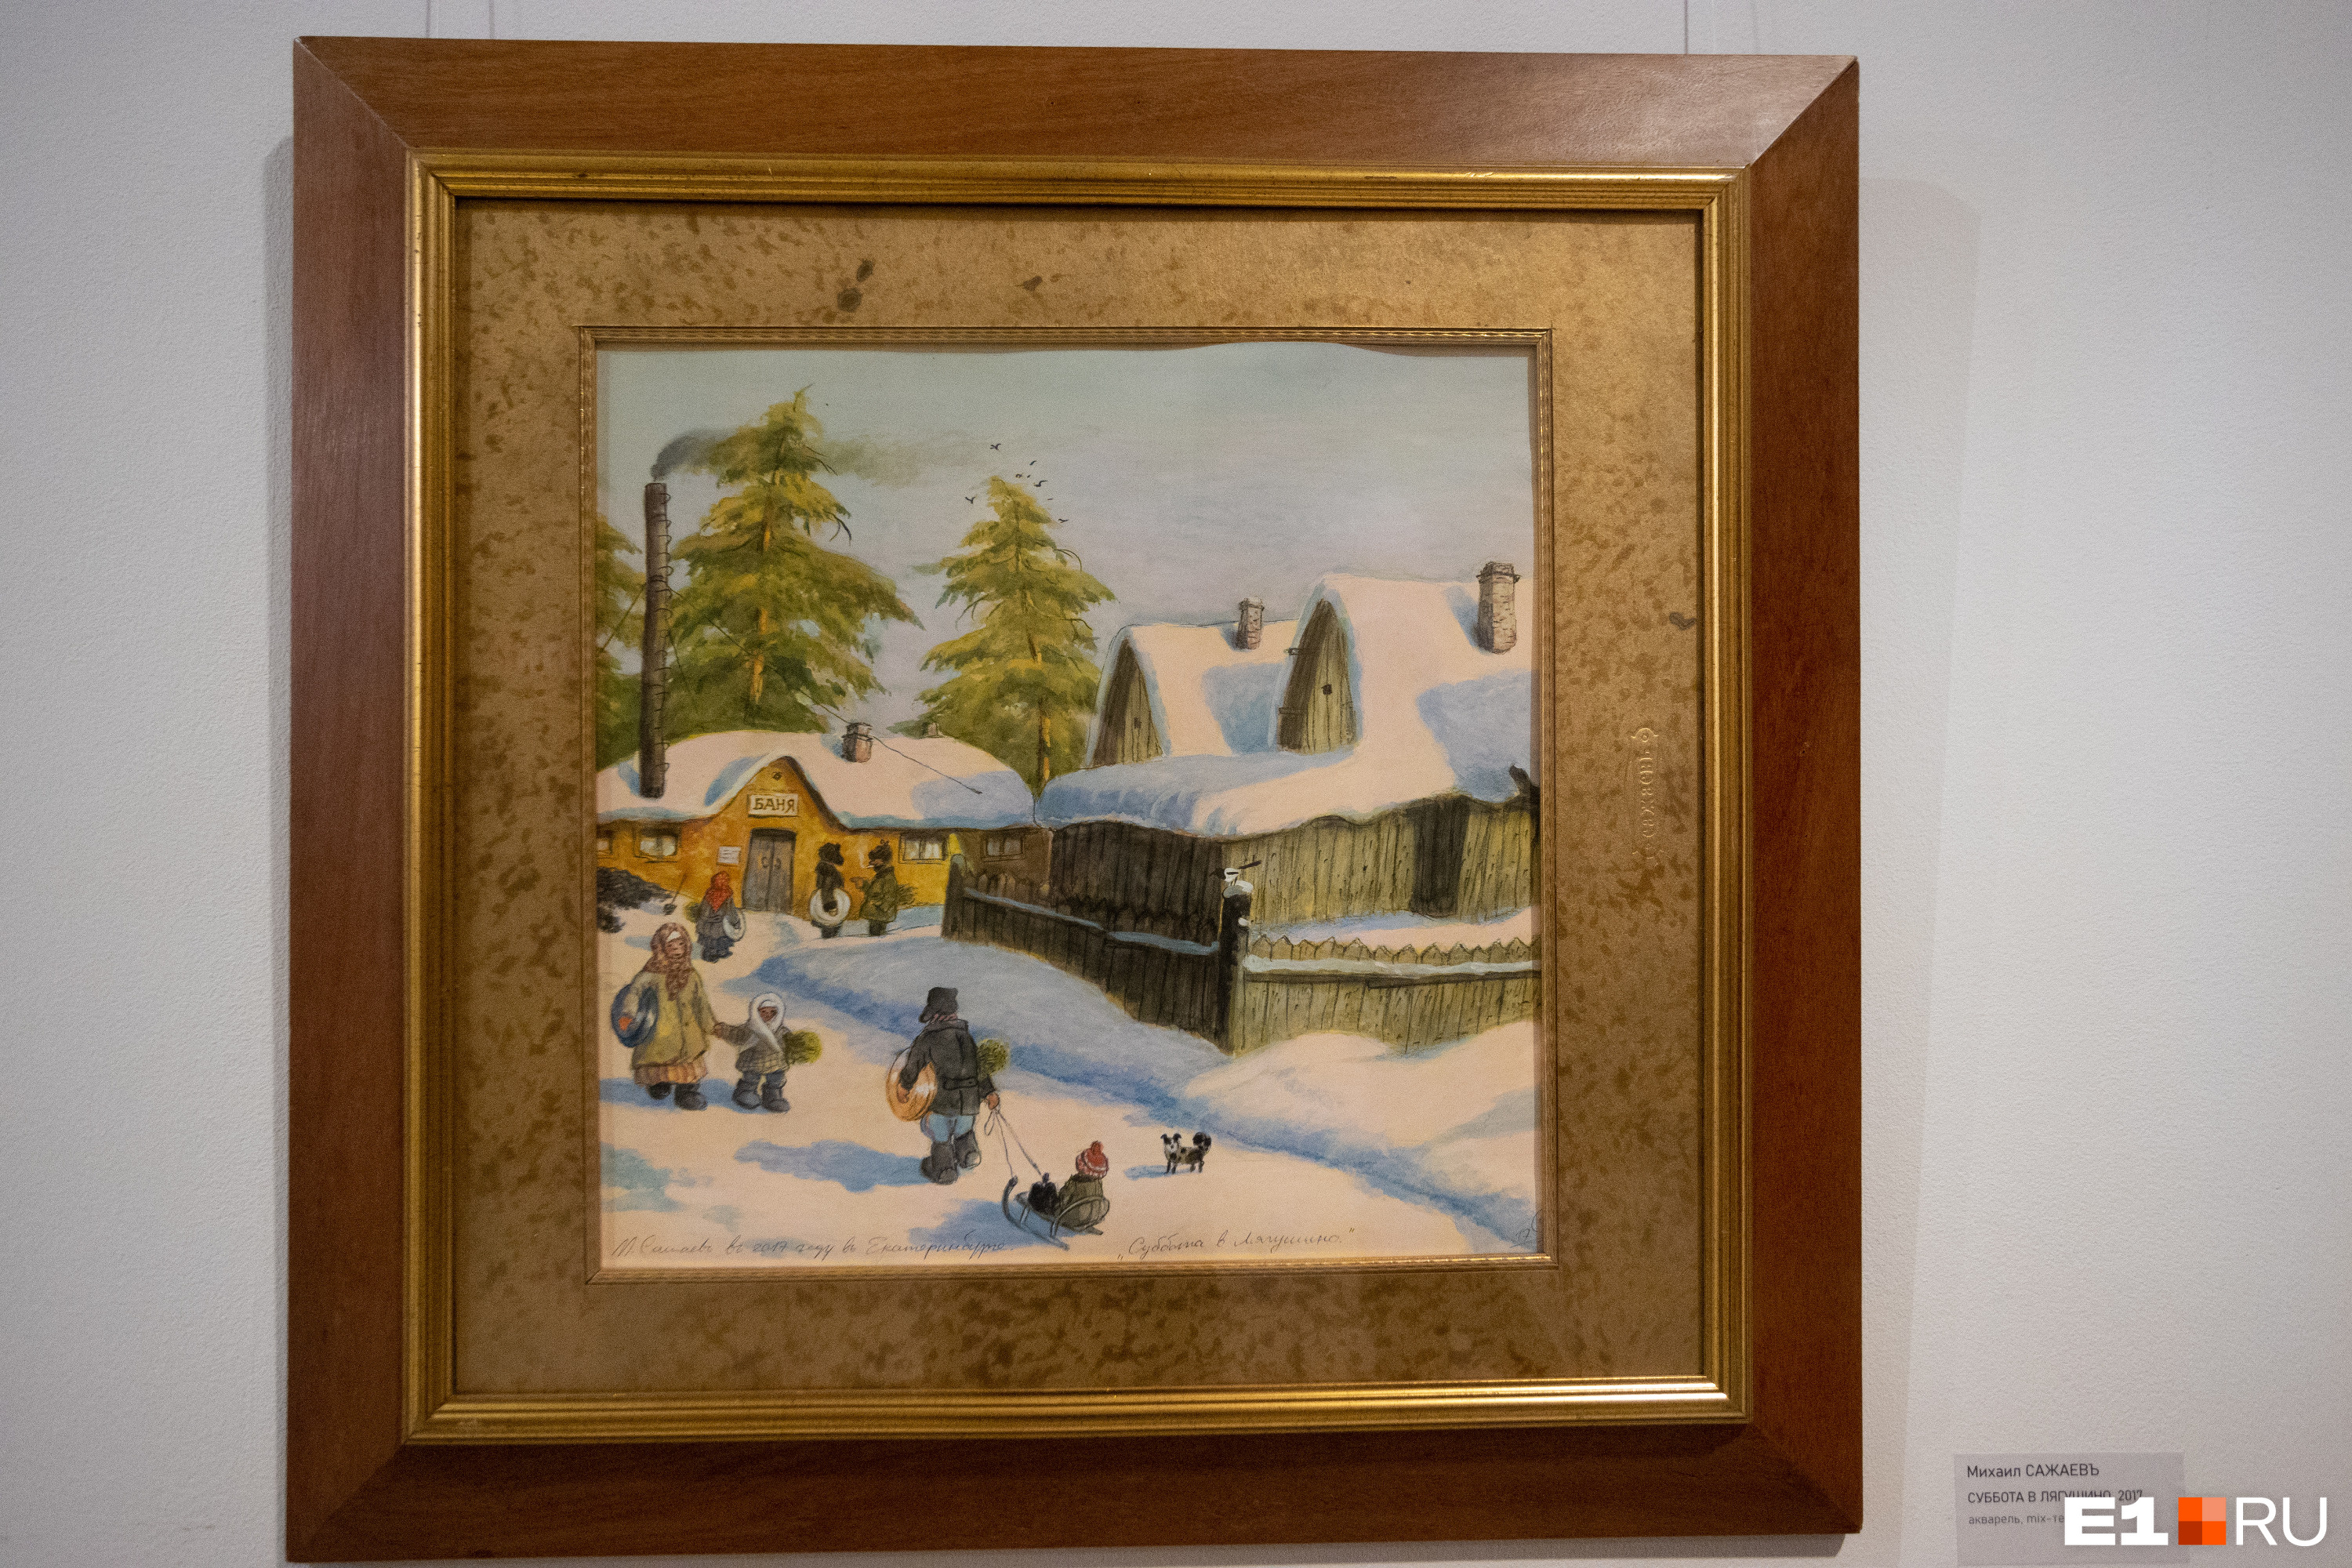 Выставка картин Михаила Сажаева открылась в галерее «Главный проспект» на Ленина, 8